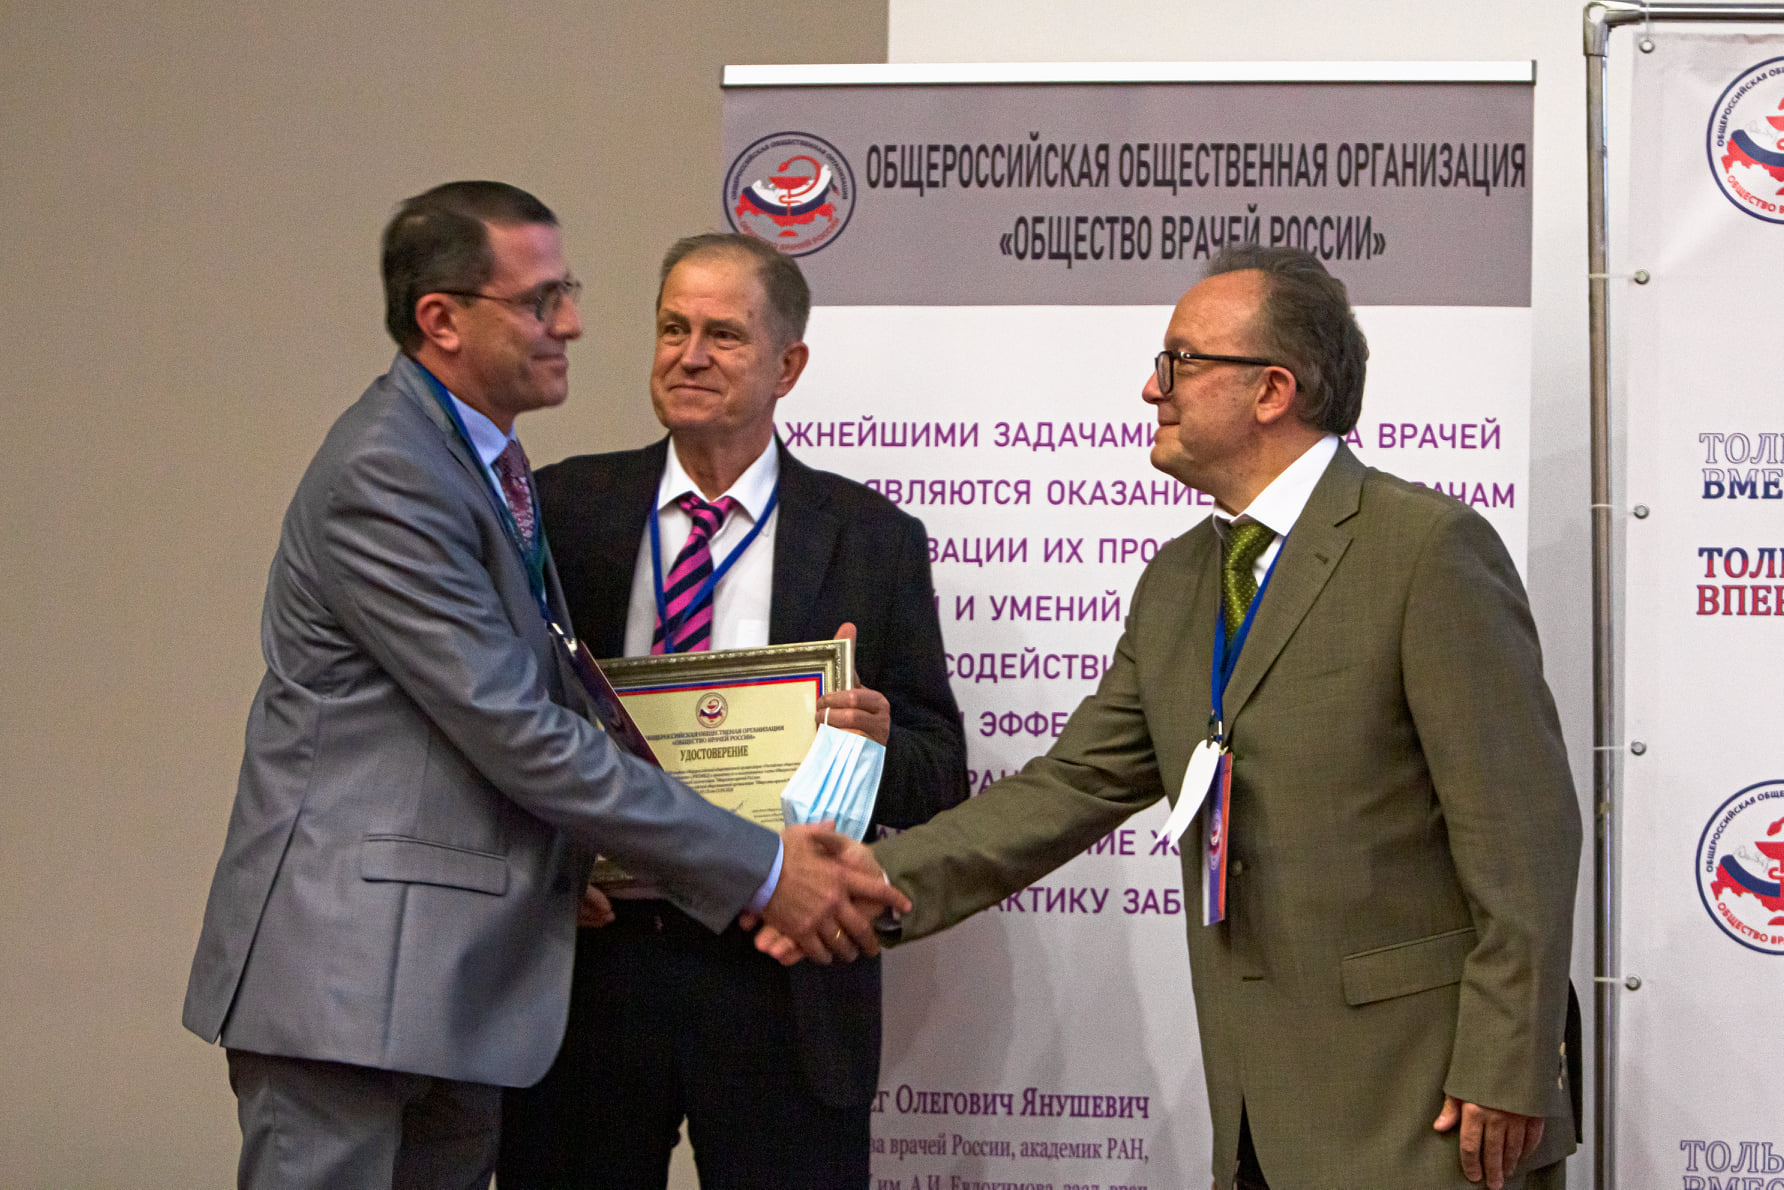 РОСОМЕД стало коллективным членом Общероссийской общественной организации «Общество врачей России»